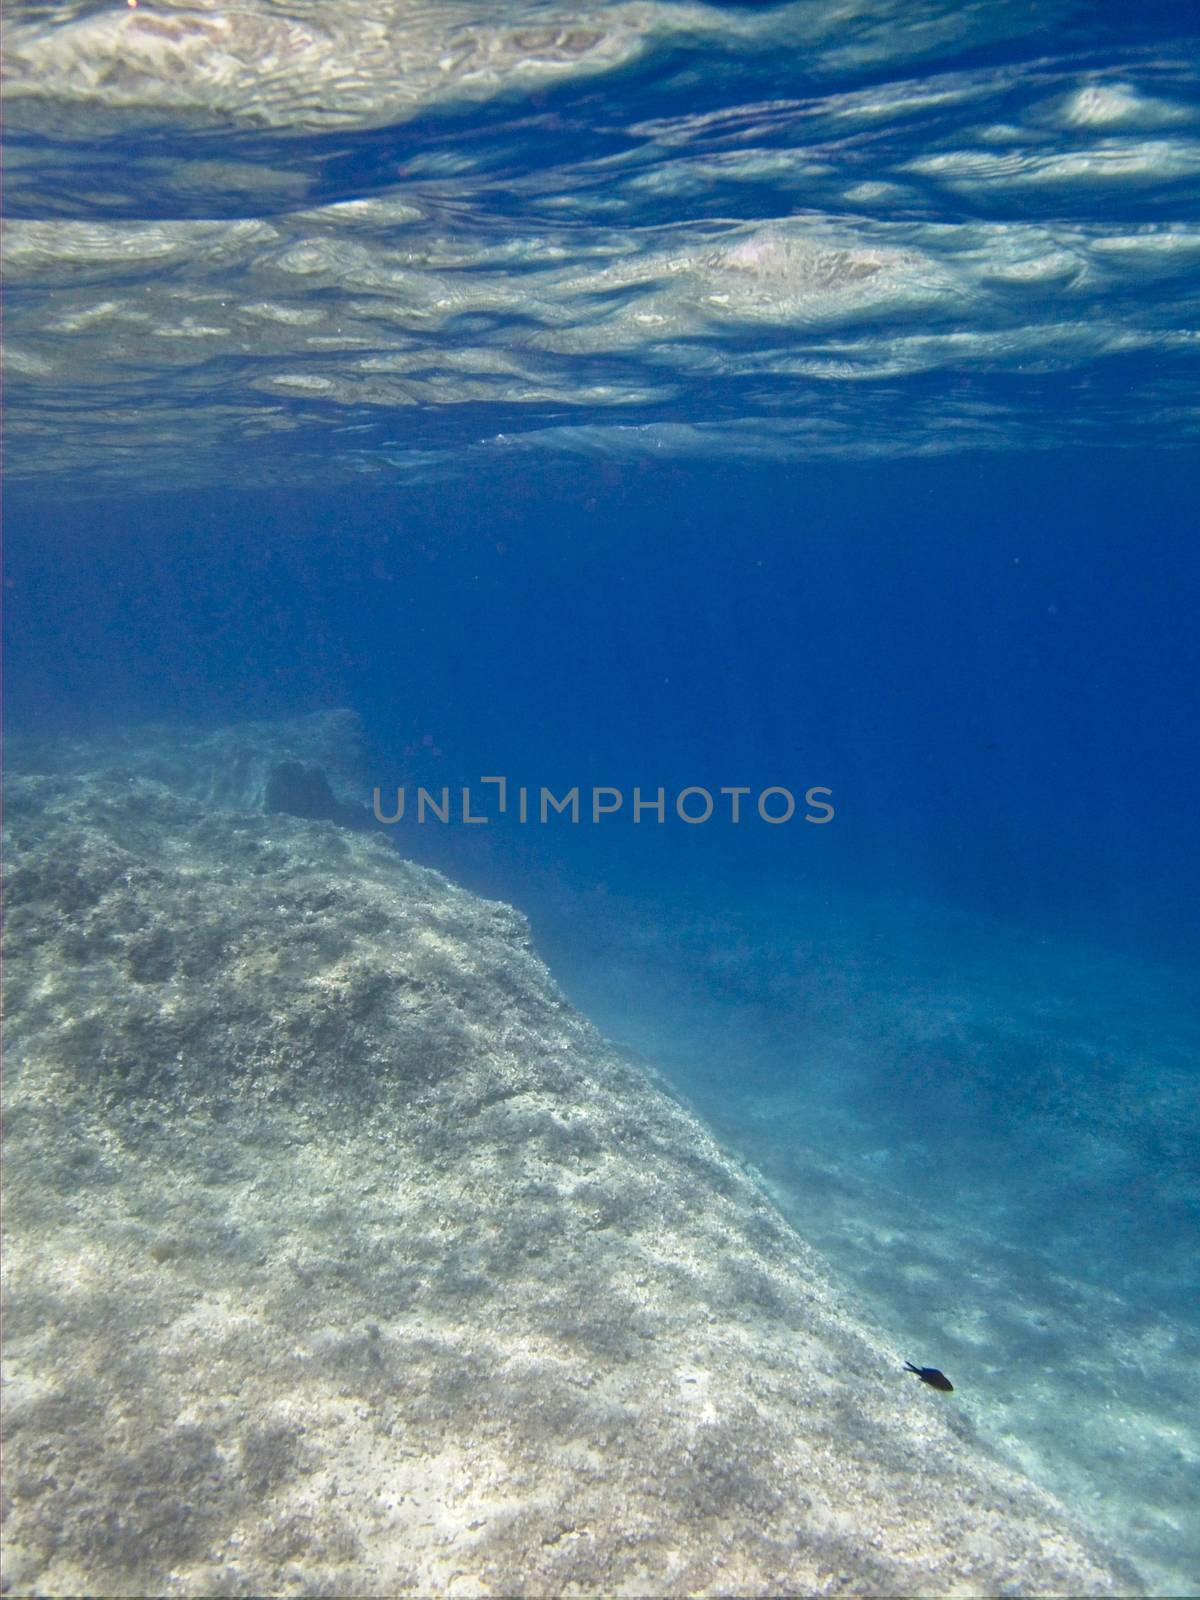 Underwater World by PhotoWorks